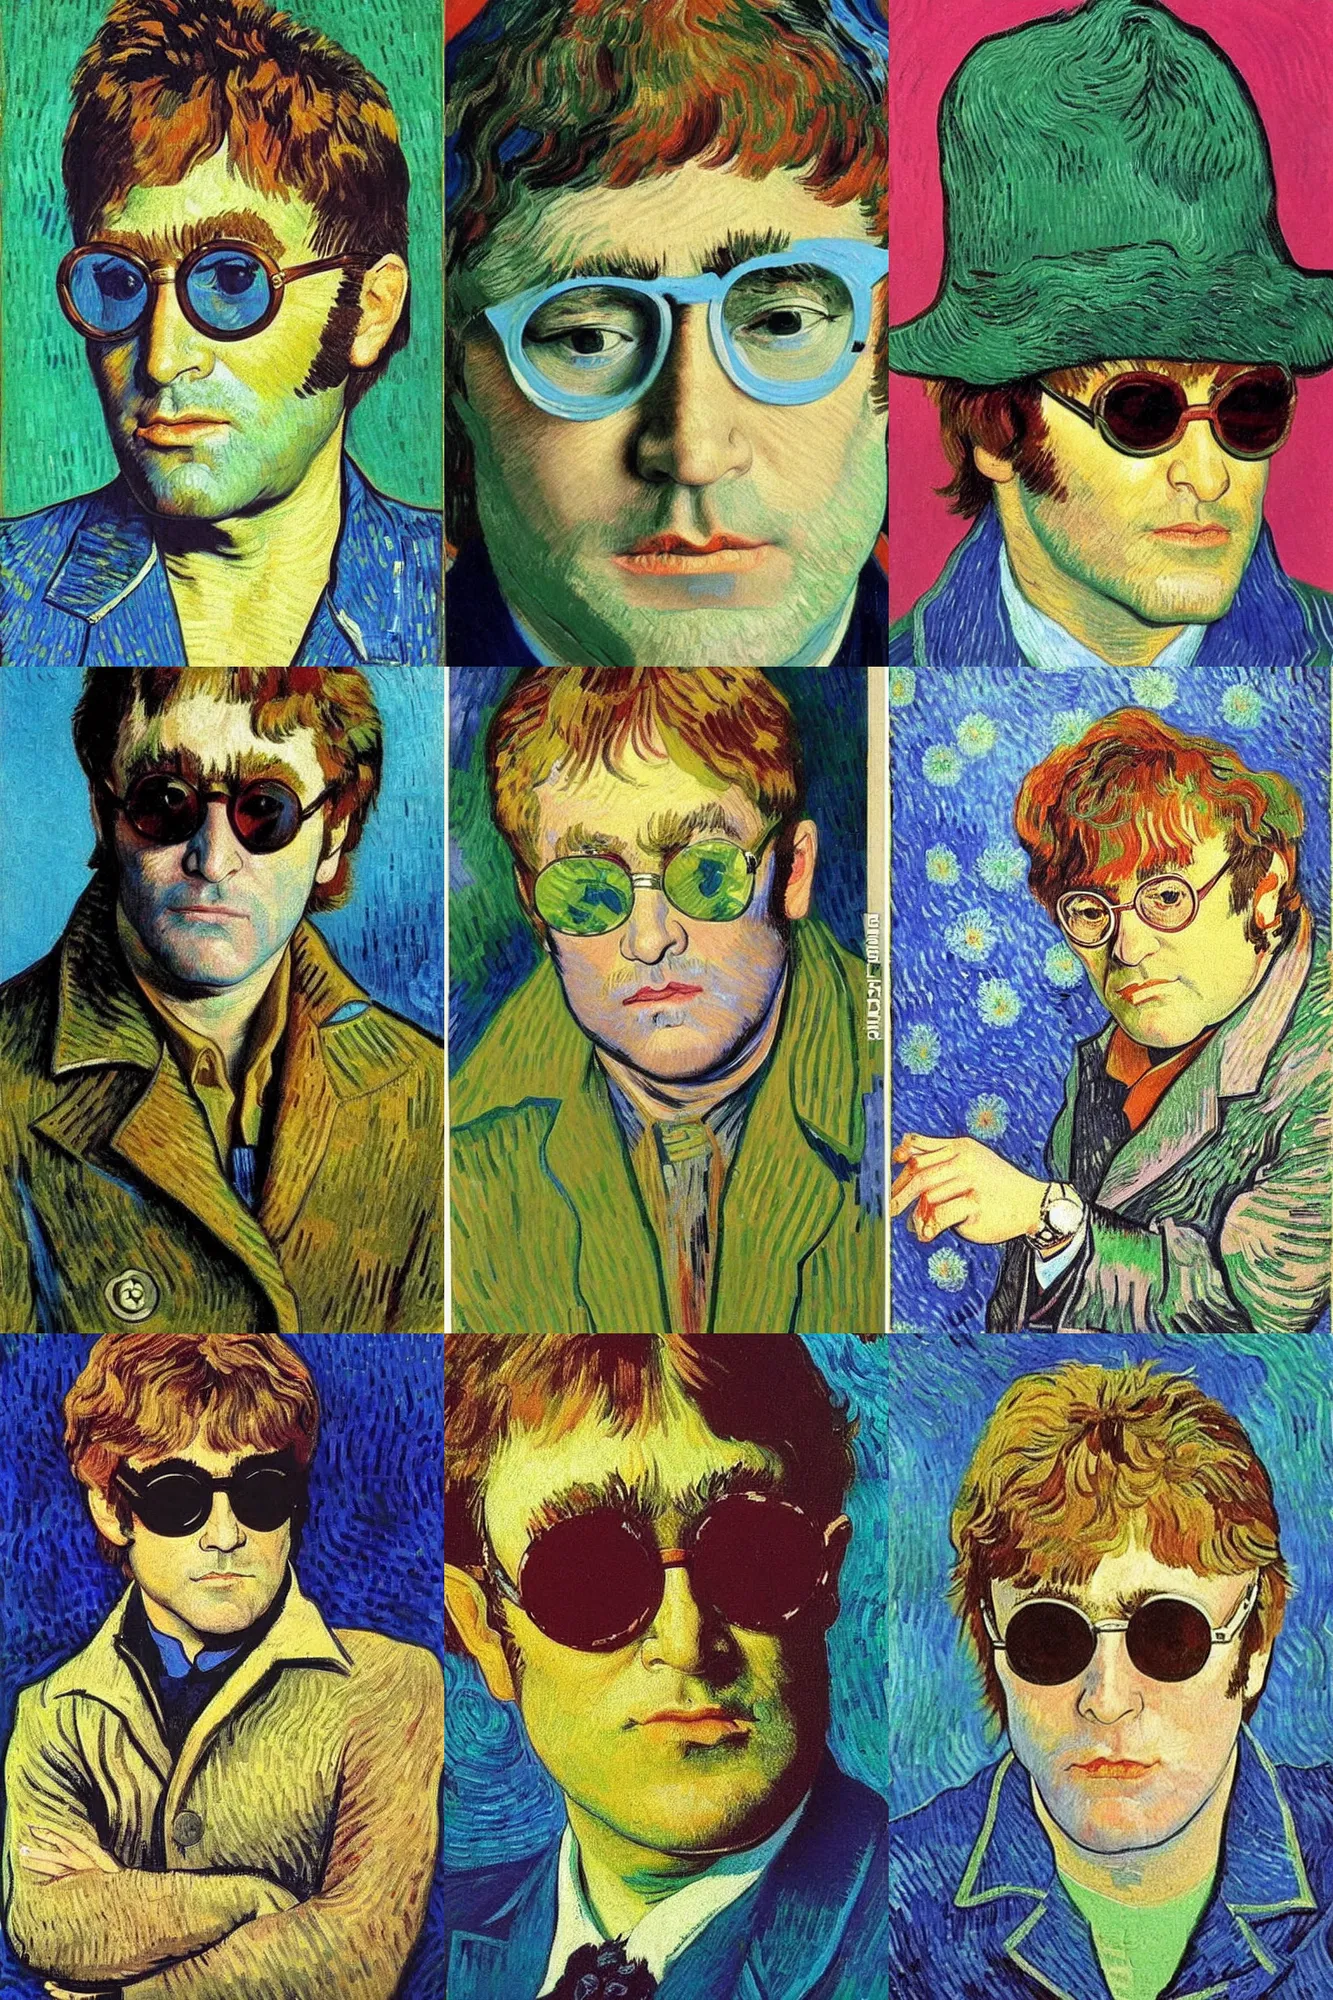 Prompt: Portrait of Elton John Lennon in 1970 by Van gogh